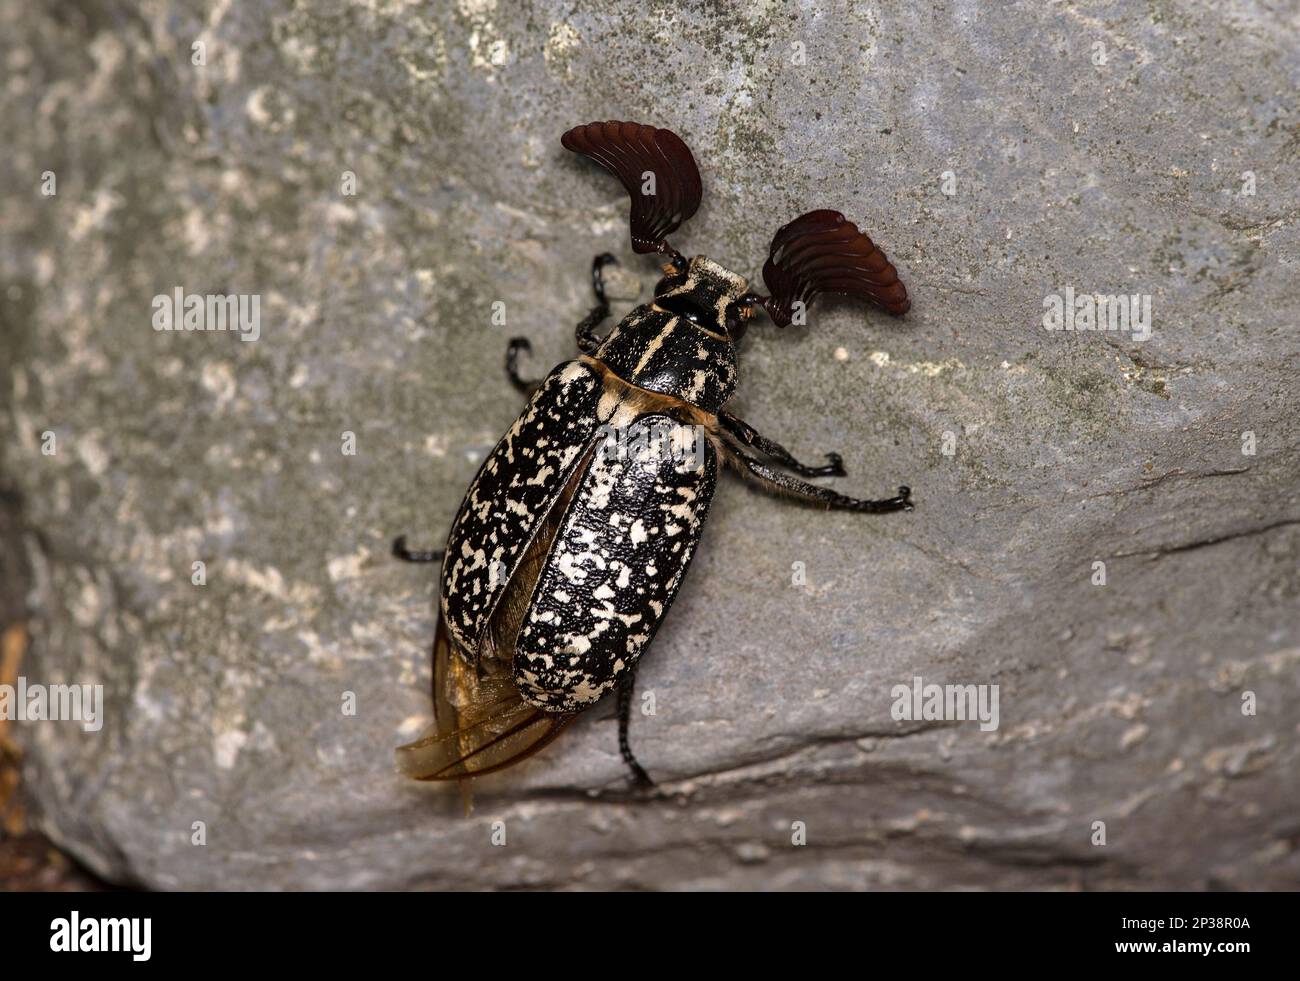 Coléoptère mâle Polyphylla fullo appartenant à la famille des Scarabaeidae, Ovronnaz, Valais, Suisse Banque D'Images